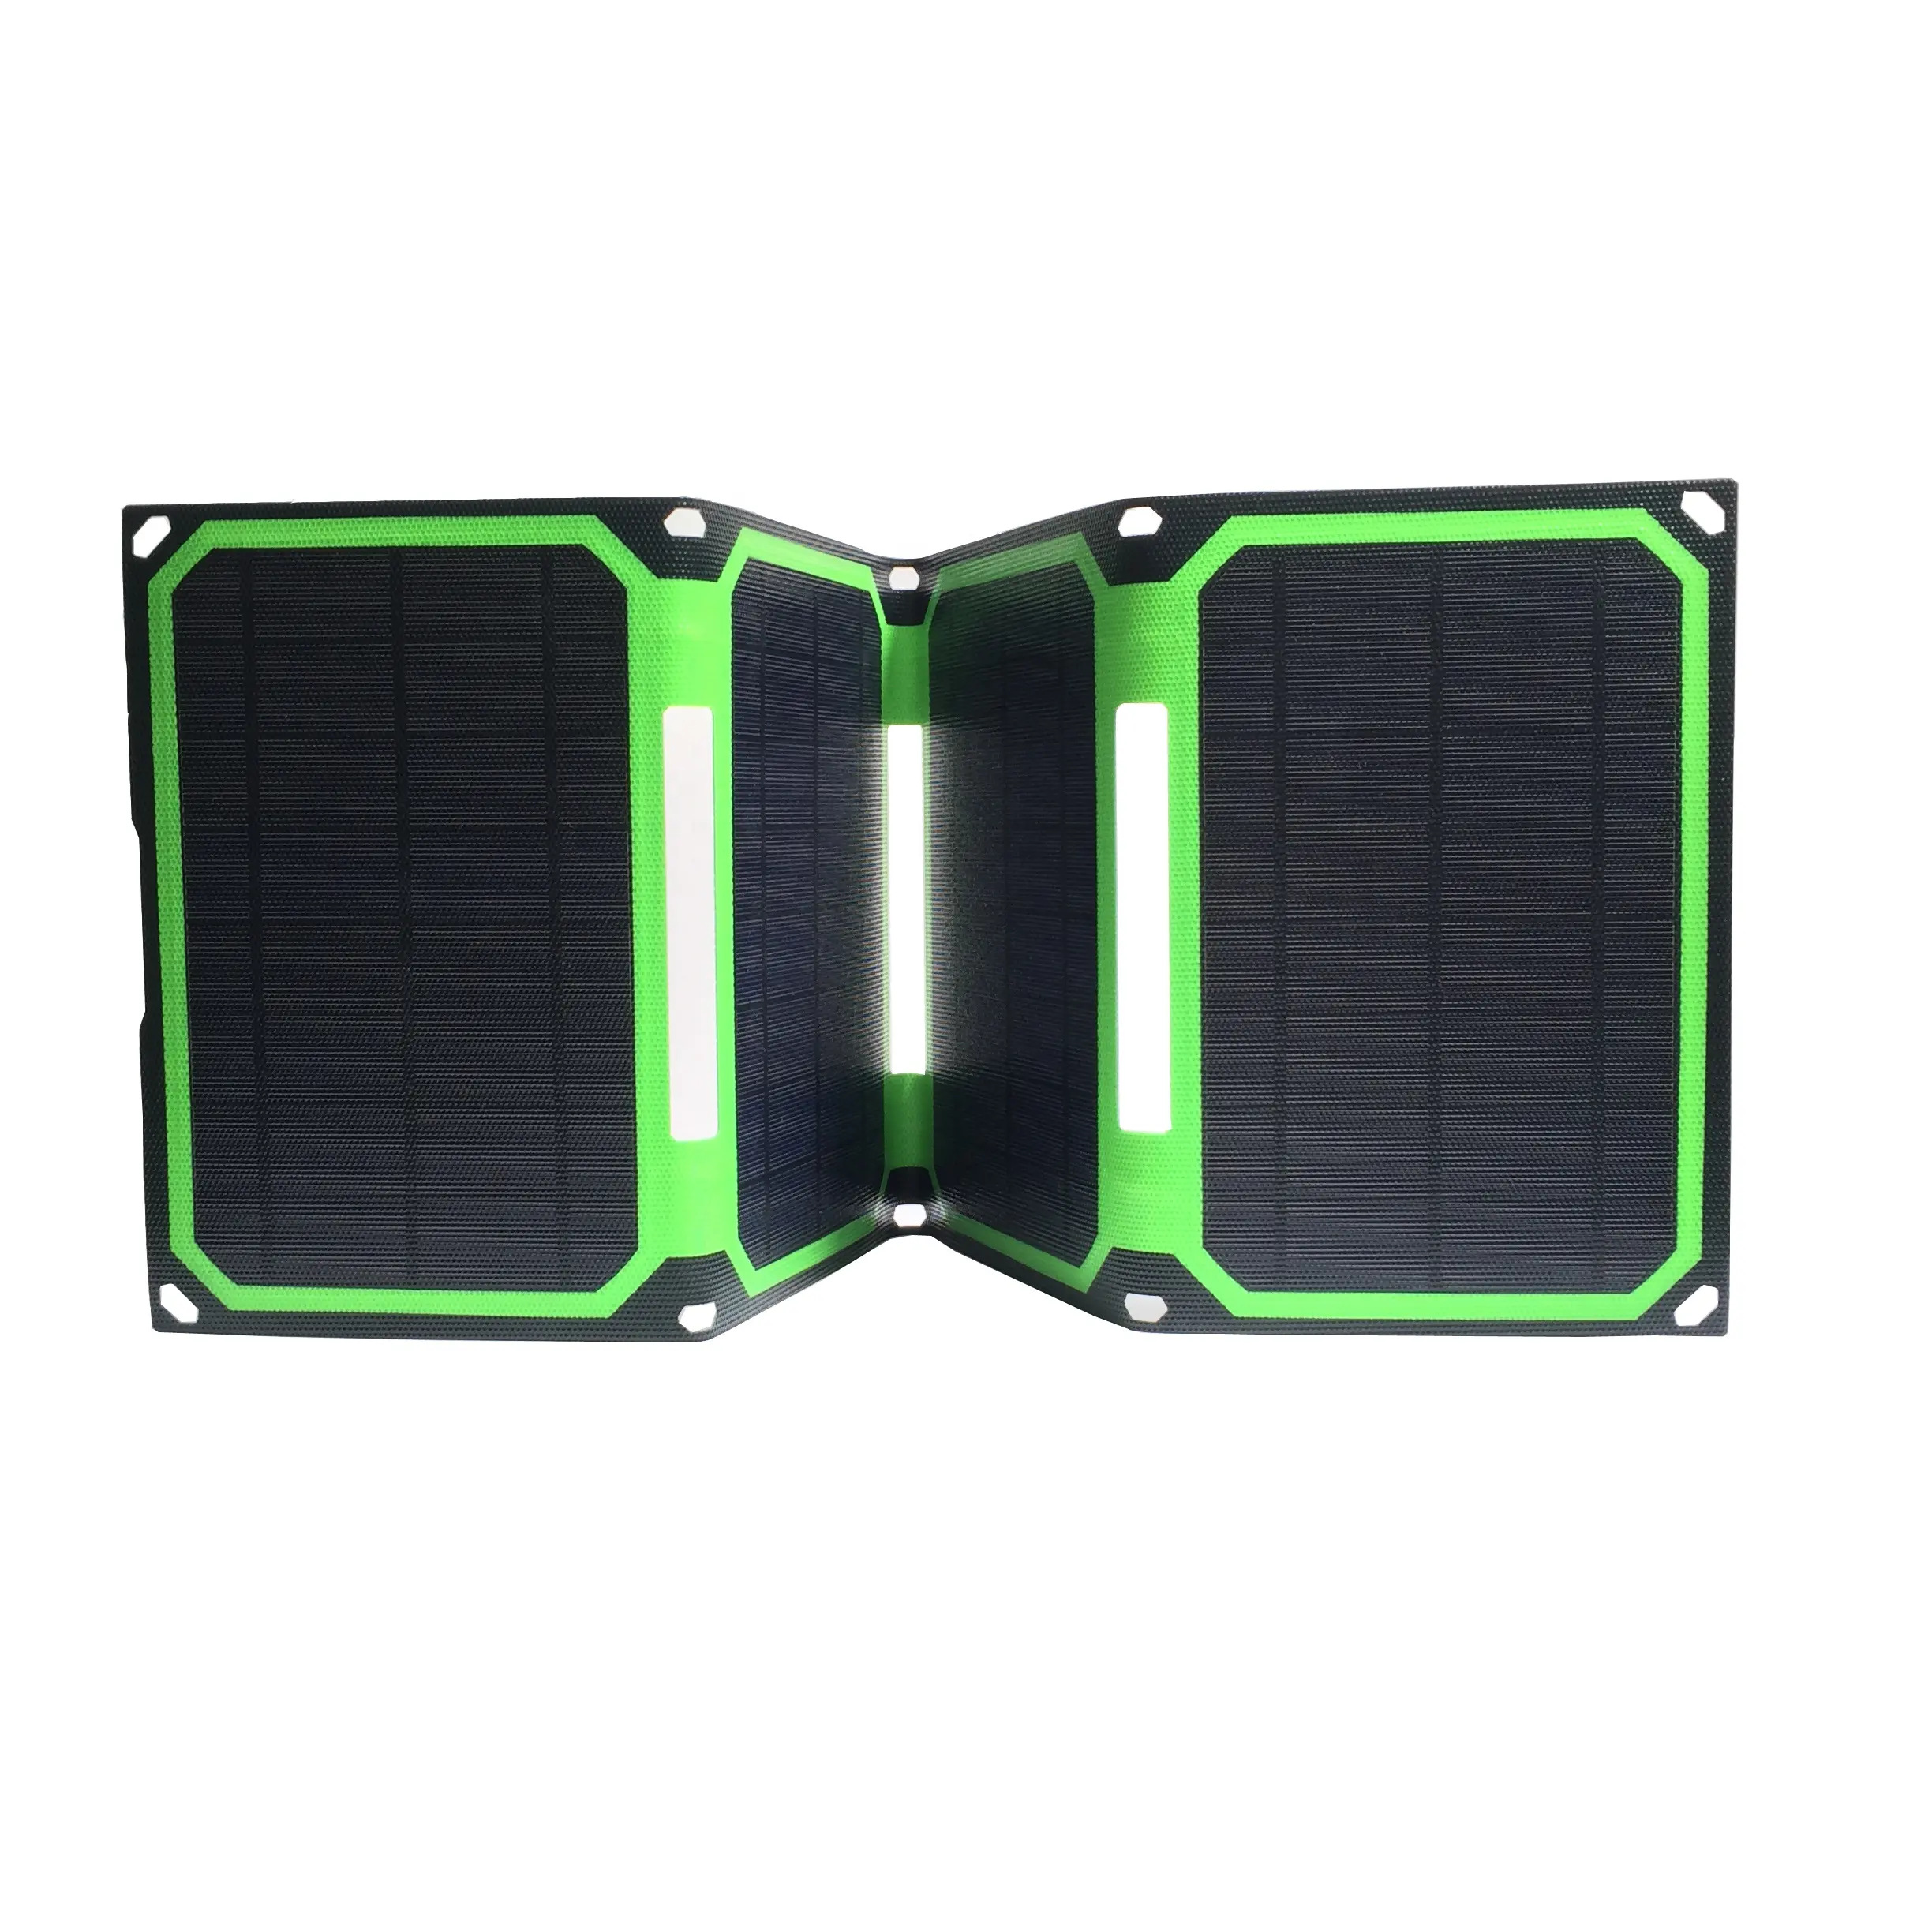 25 Вт, портативное зарядное устройство ETFE для мобильных телефонов на солнечной батарее, зарядное устройство для ноутбука